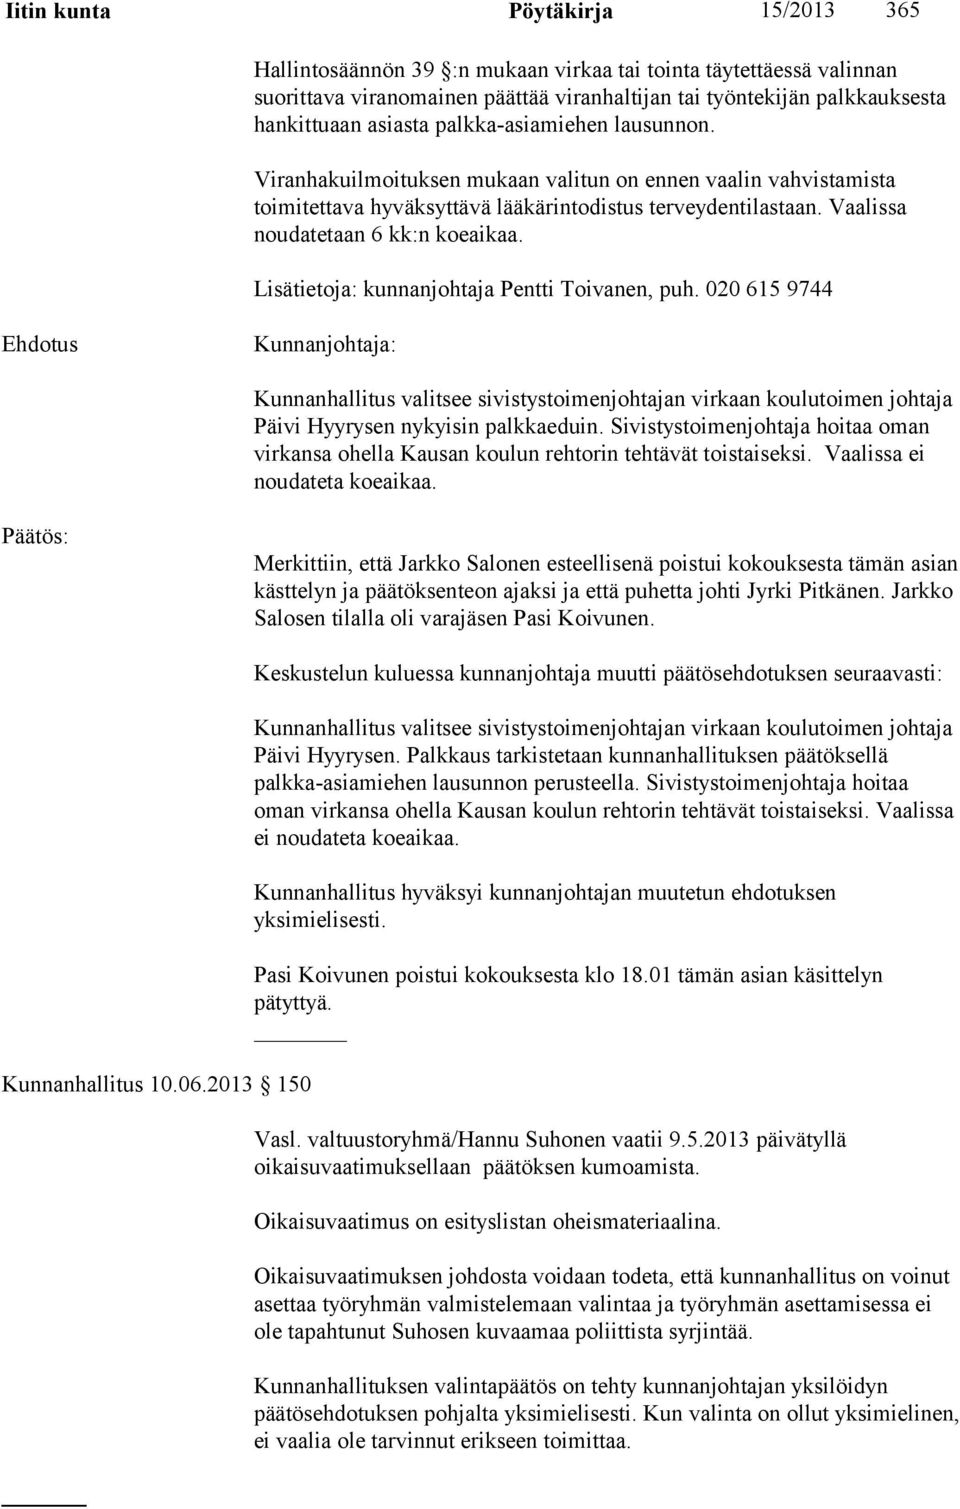 Lisätietoja: kunnanjohtaja Pentti Toivanen, puh. 020 615 9744 Kunnanjohtaja: Kunnanhallitus valitsee sivistystoimenjohtajan virkaan koulutoimen johtaja Päivi Hyyrysen nykyisin palkkaeduin.